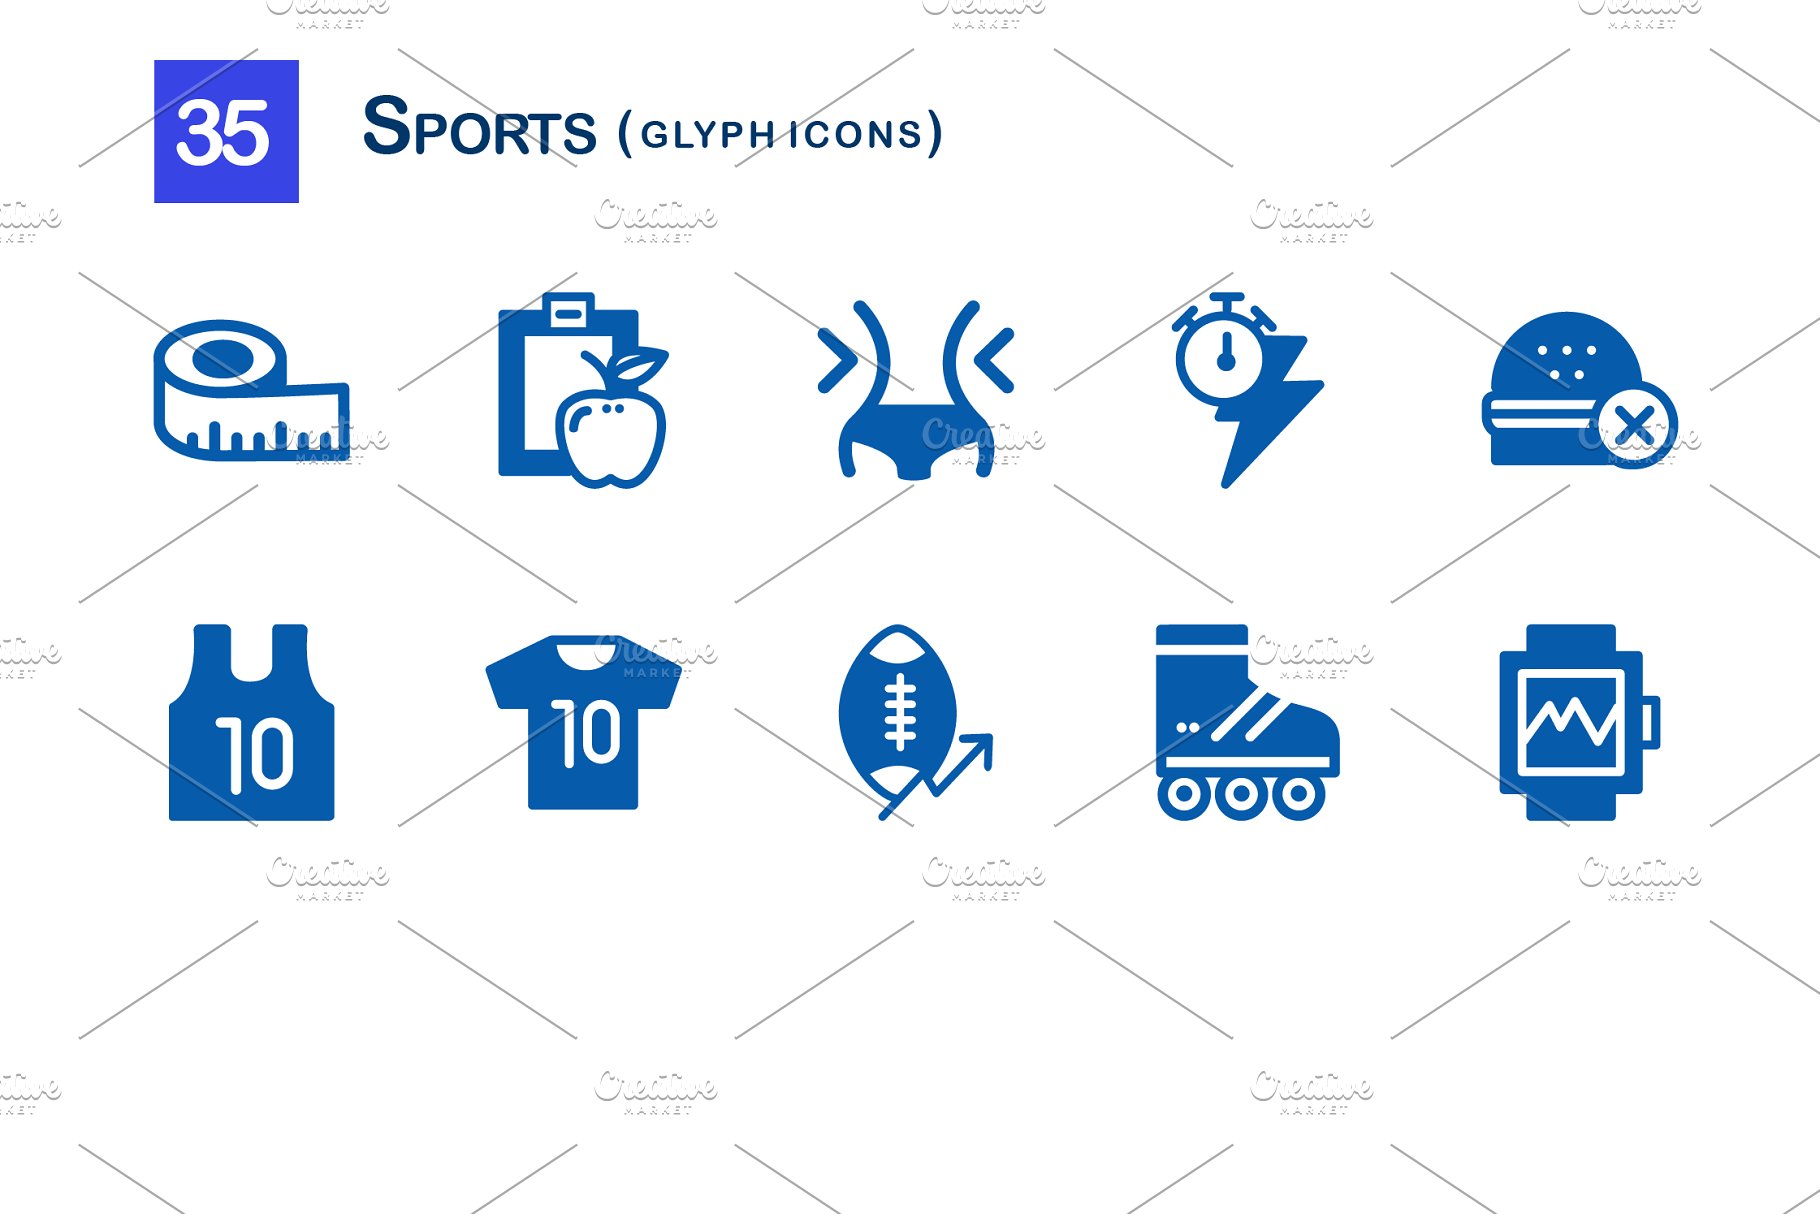 35枚体育运动标志字体图标 35 Sports Glyph Icons插图(2)